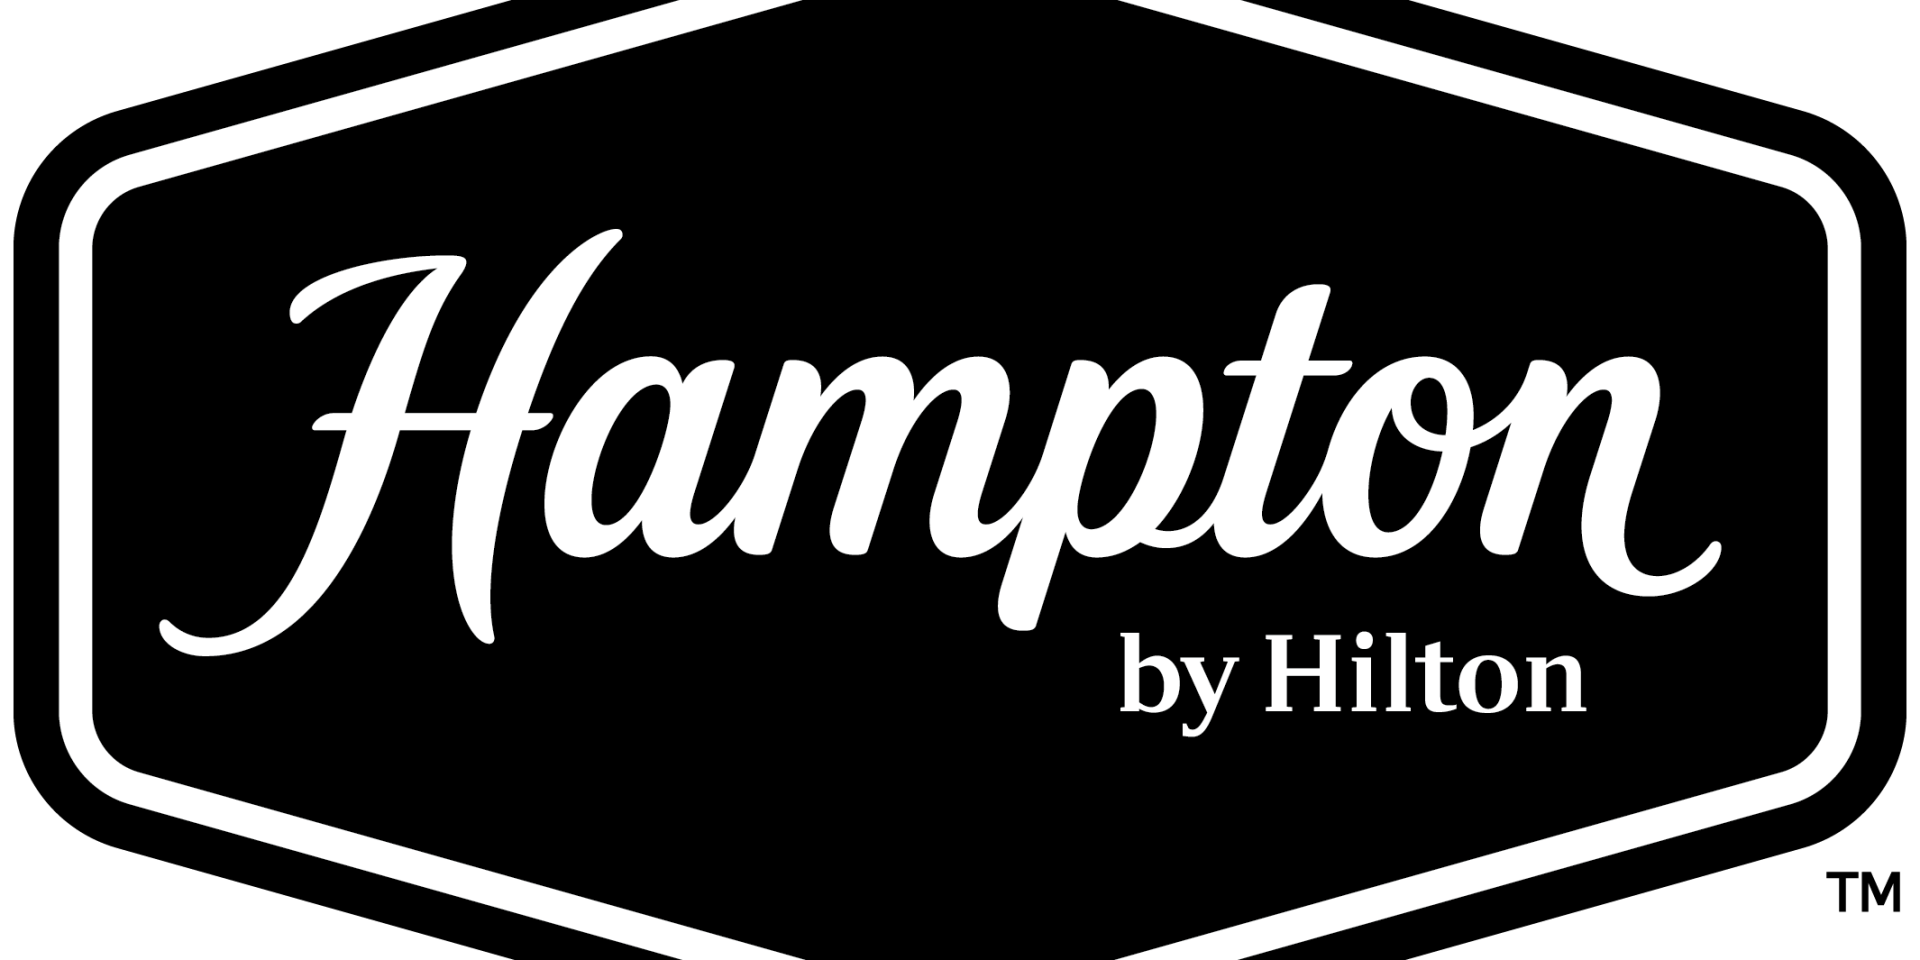 Hampton by Hilton - Logo - Black